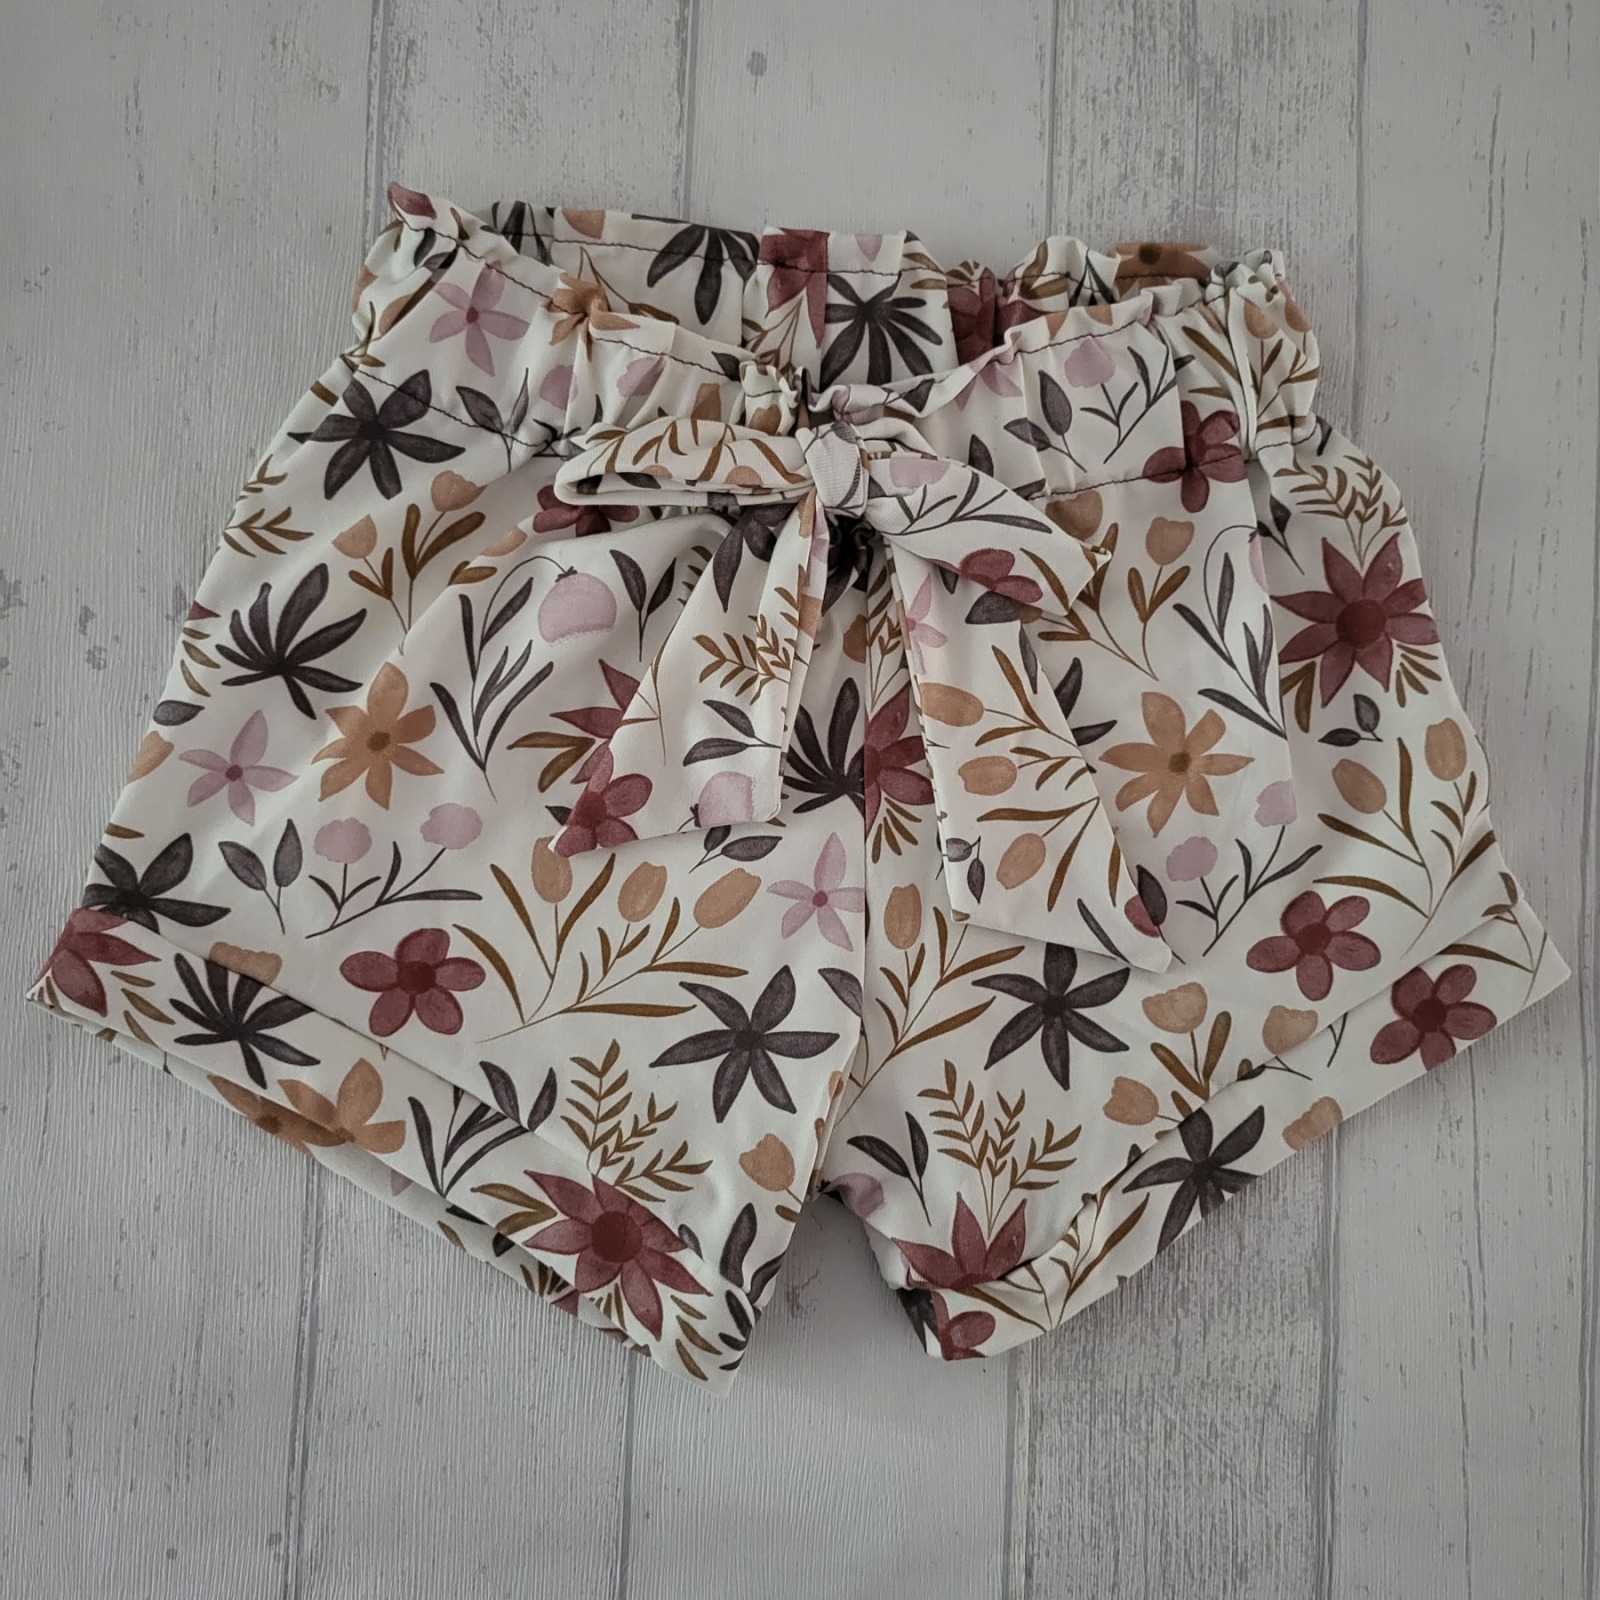 Sofortkauf Handmade Sunny Shorts Gr. 80 + 110 + 128 von NahtRabatz